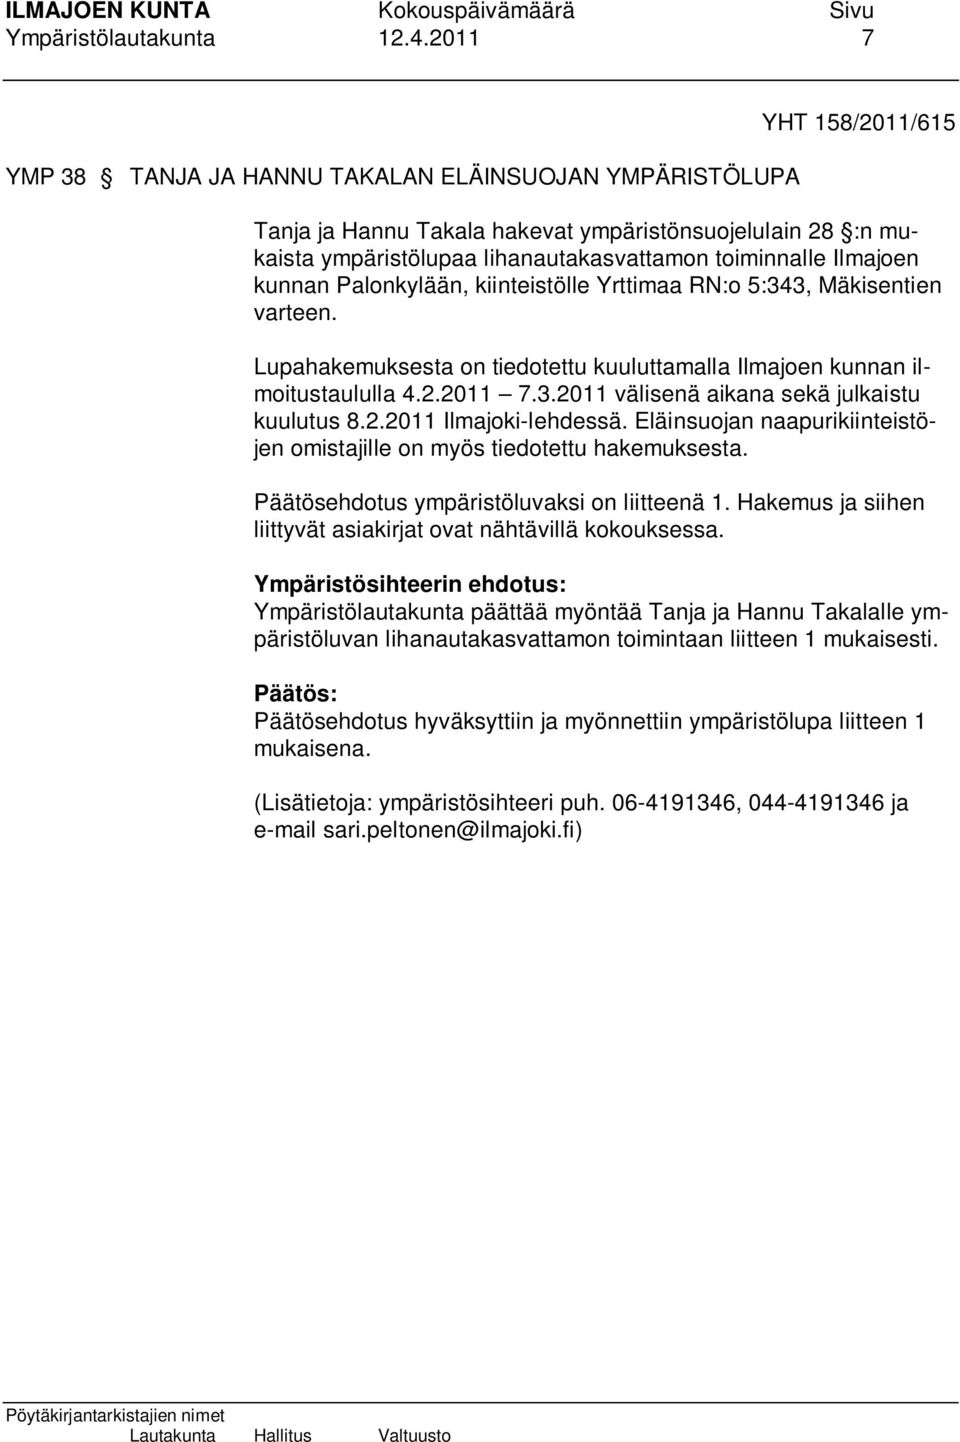 Ilmajoen kunnan Palonkylään, kiinteistölle Yrttimaa RN:o 5:343, Mäkisentien varteen. Lupahakemuksesta on tiedotettu kuuluttamalla Ilmajoen kunnan ilmoitustaululla 4.2.2011 7.3.2011 välisenä aikana sekä julkaistu kuulutus 8.